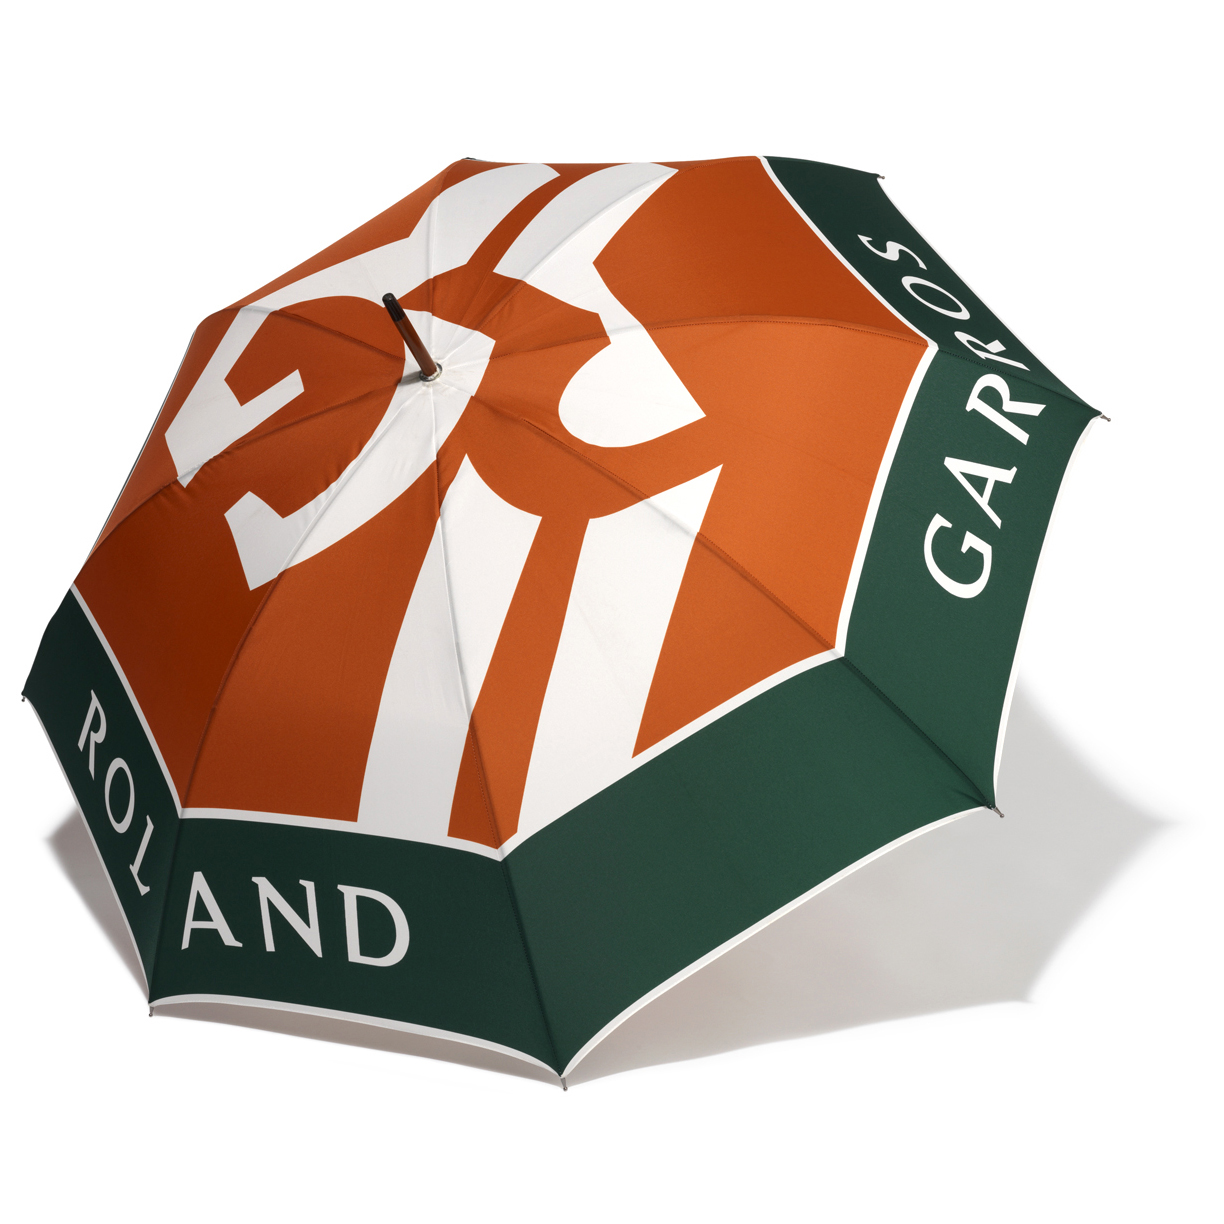 Roland-Garros Large Logo Umbrella - 93cm